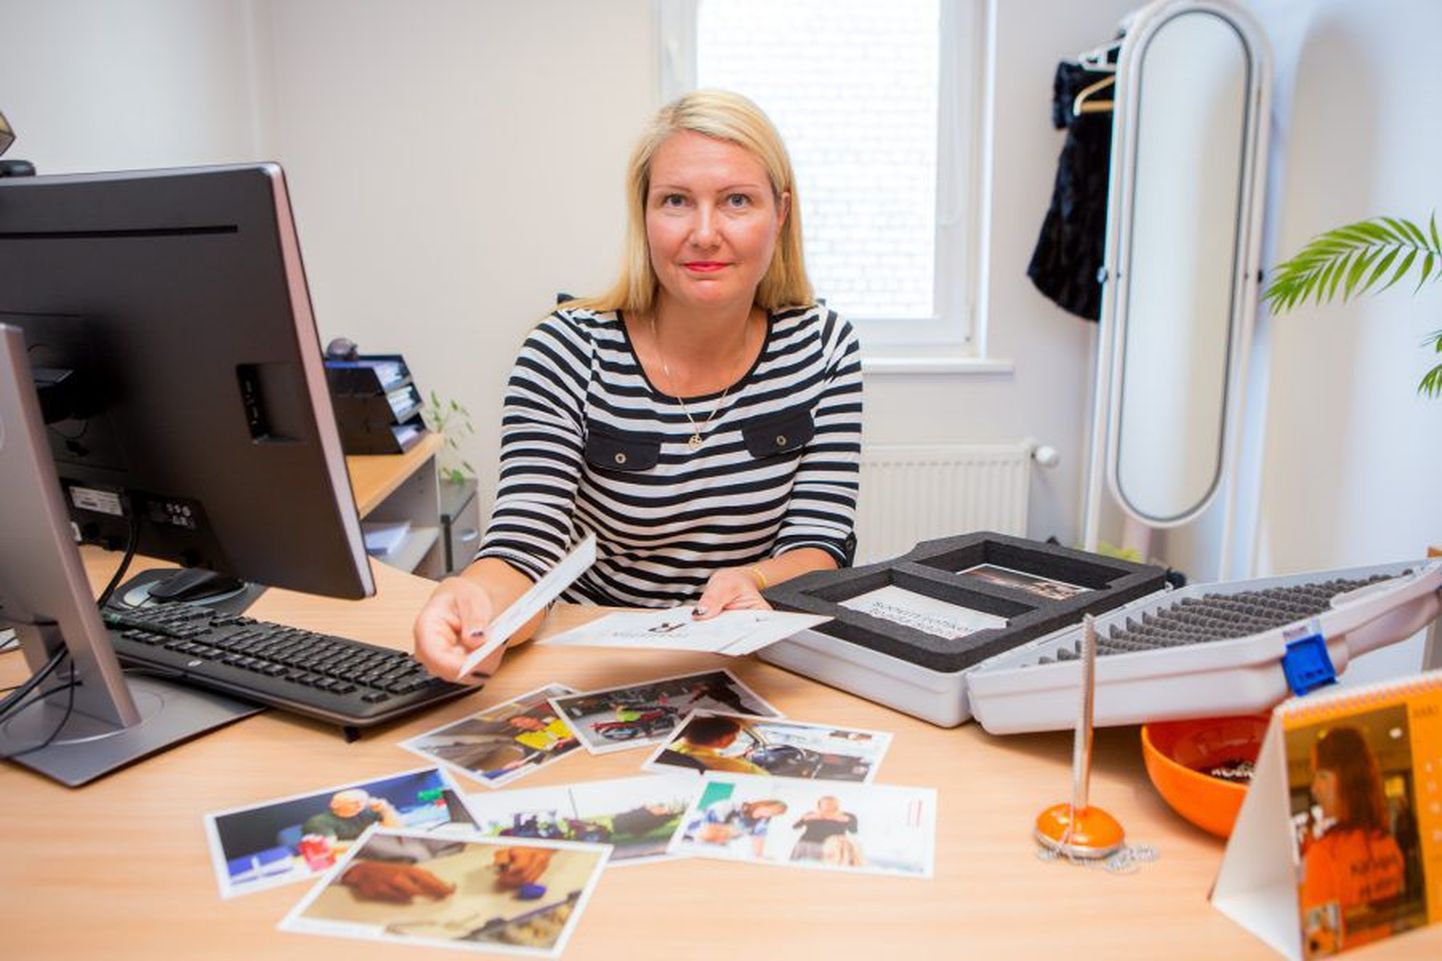 Eesti töötukassa karjäärinõustamisele saavad karjäärinõustaja Ursula Rahniku kinnitusel tulla kõik soovijad ja see on kõigile tasuta.